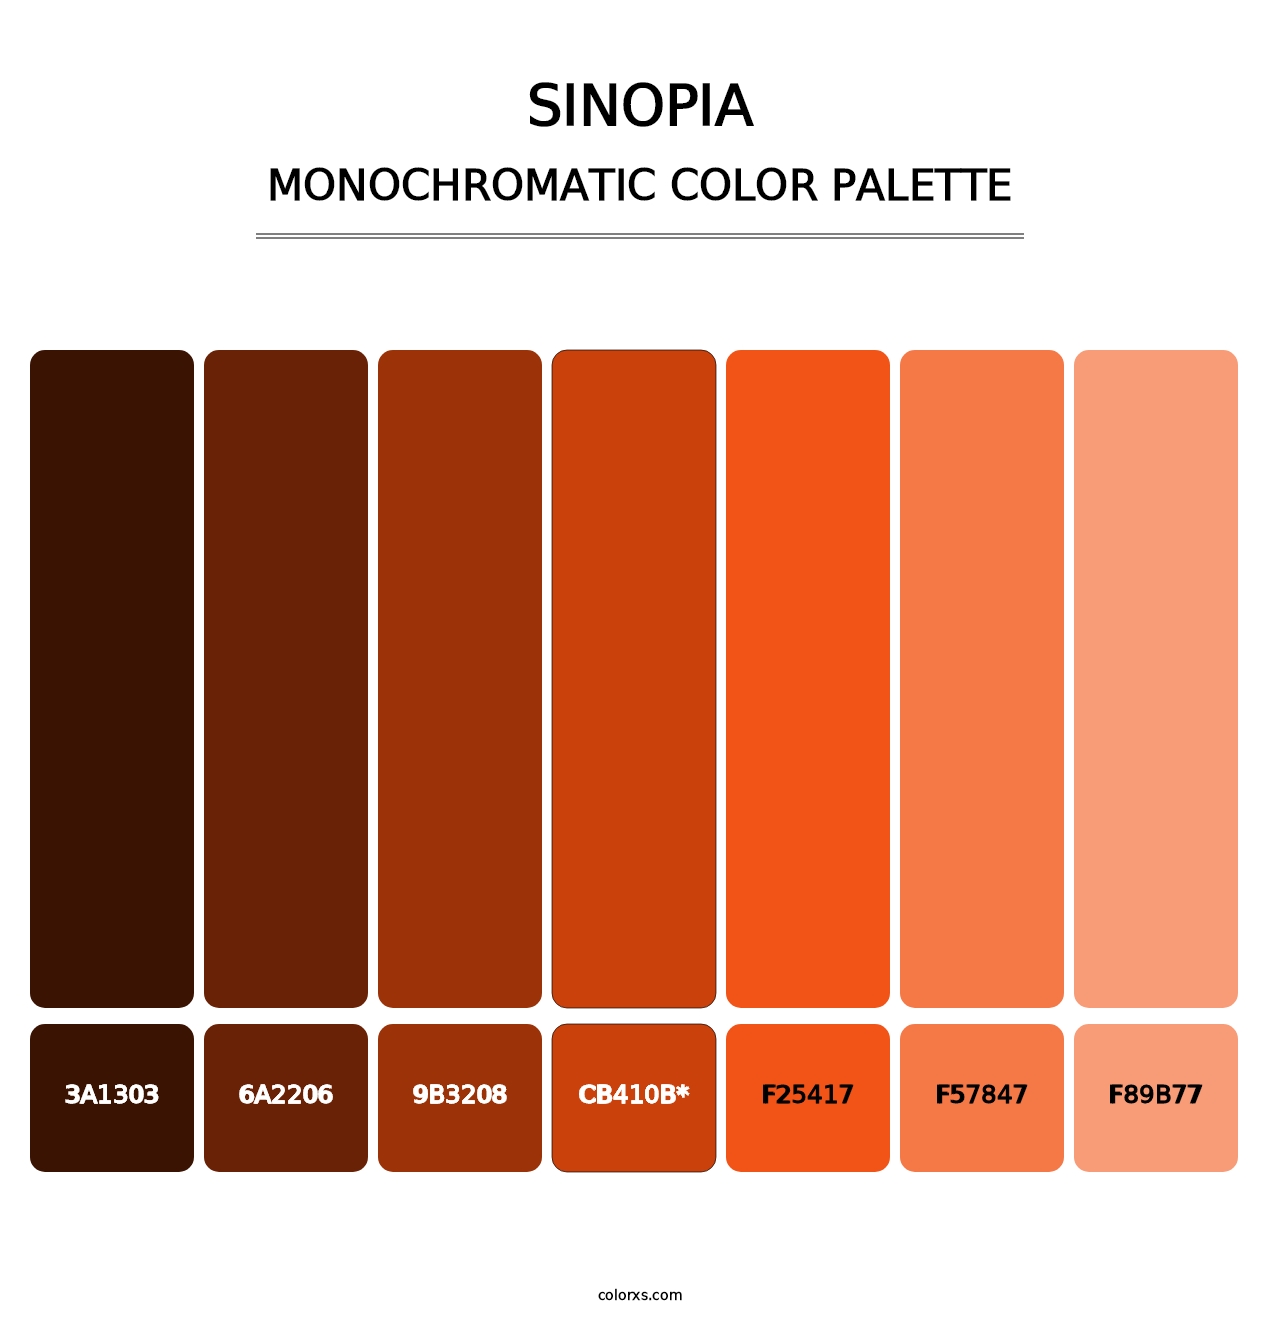 Sinopia - Monochromatic Color Palette